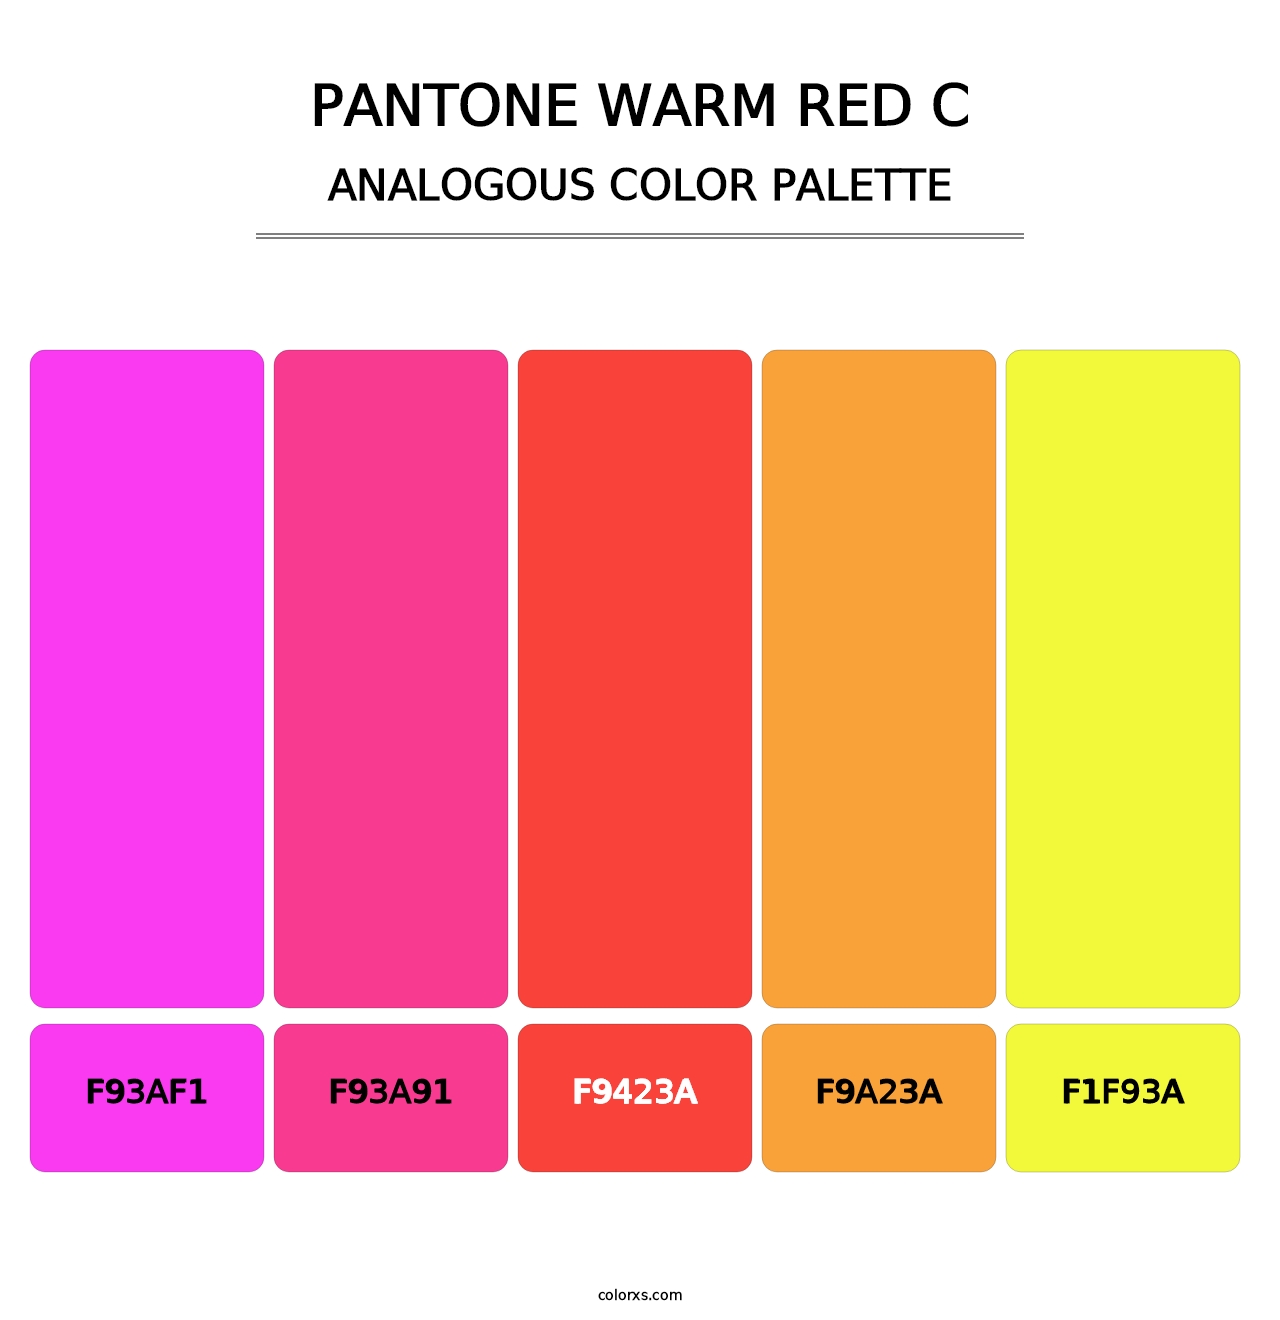 PANTONE Warm Red C - Analogous Color Palette